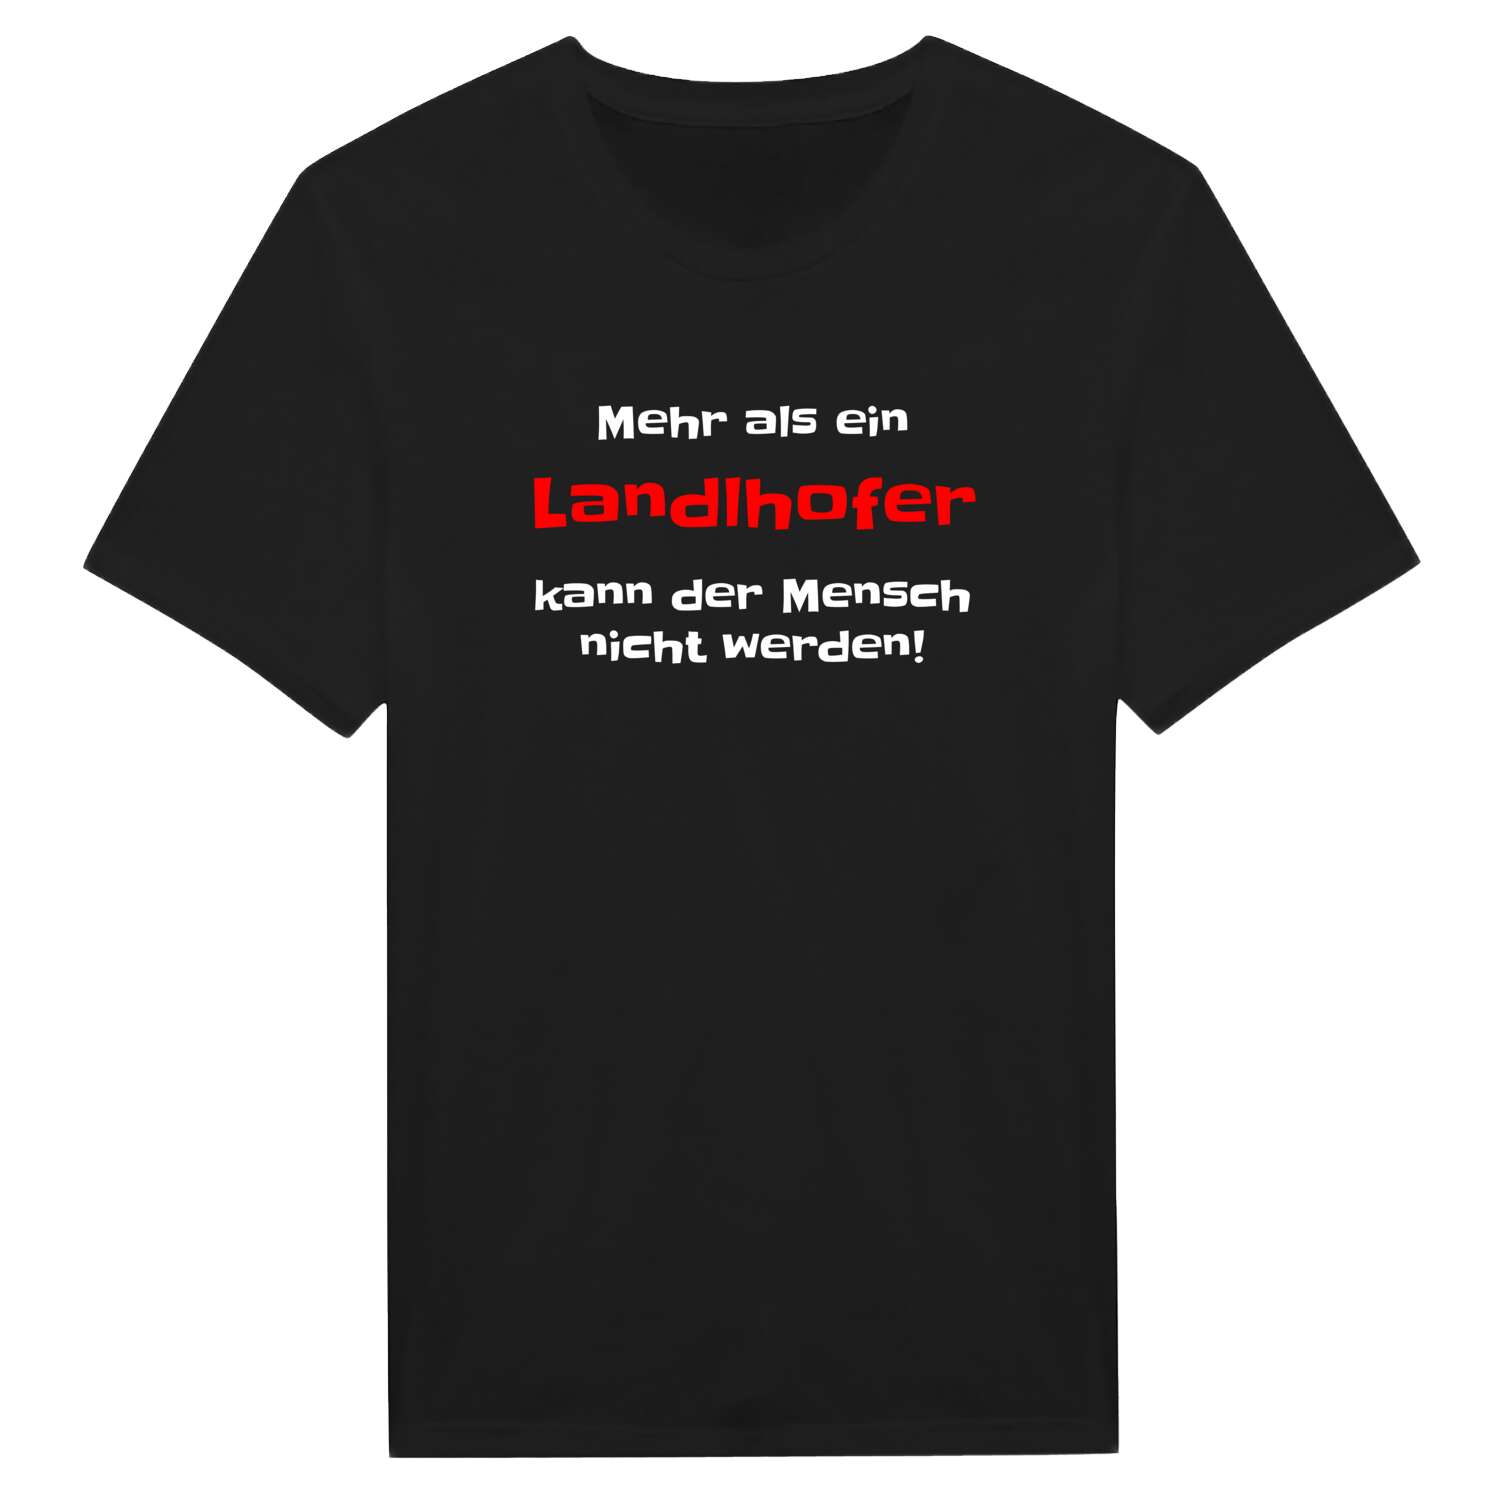 Landlhof T-Shirt »Mehr als ein«